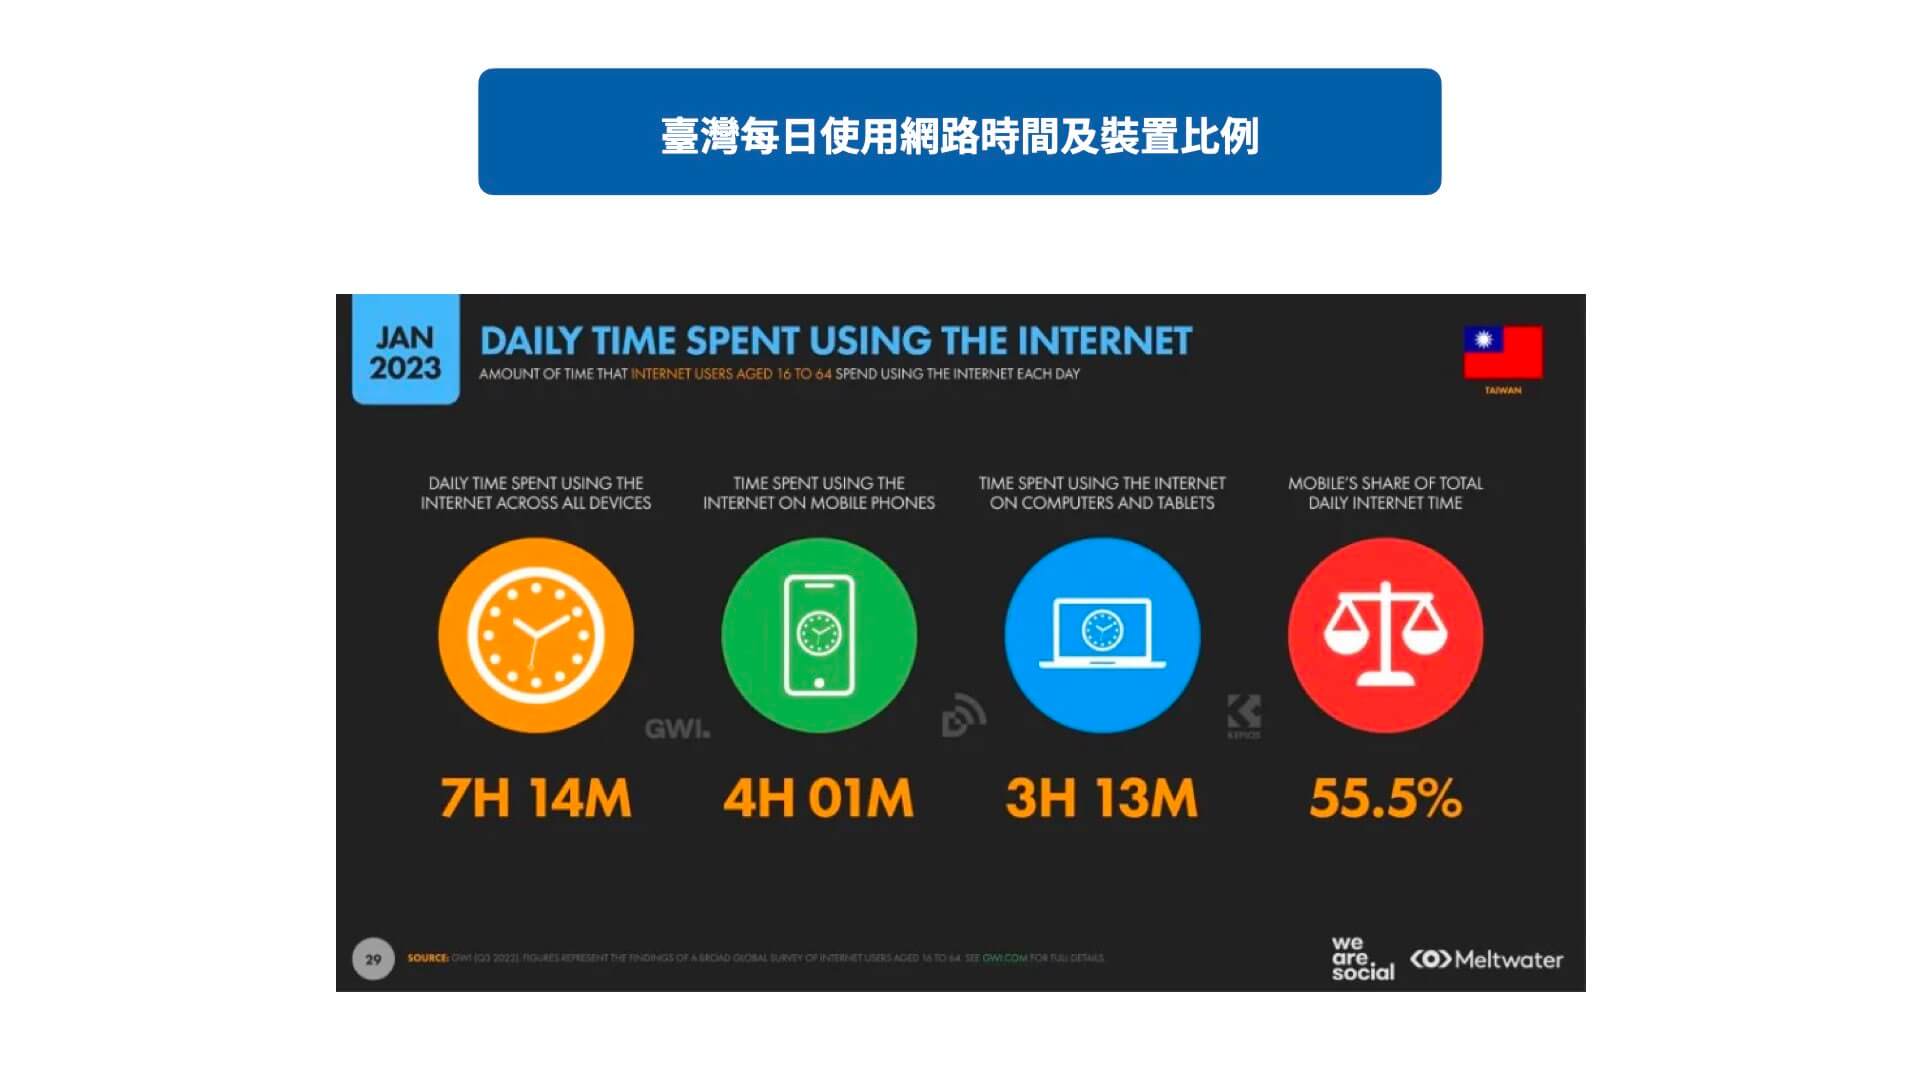 臺灣每日使用網路時間及裝置比例